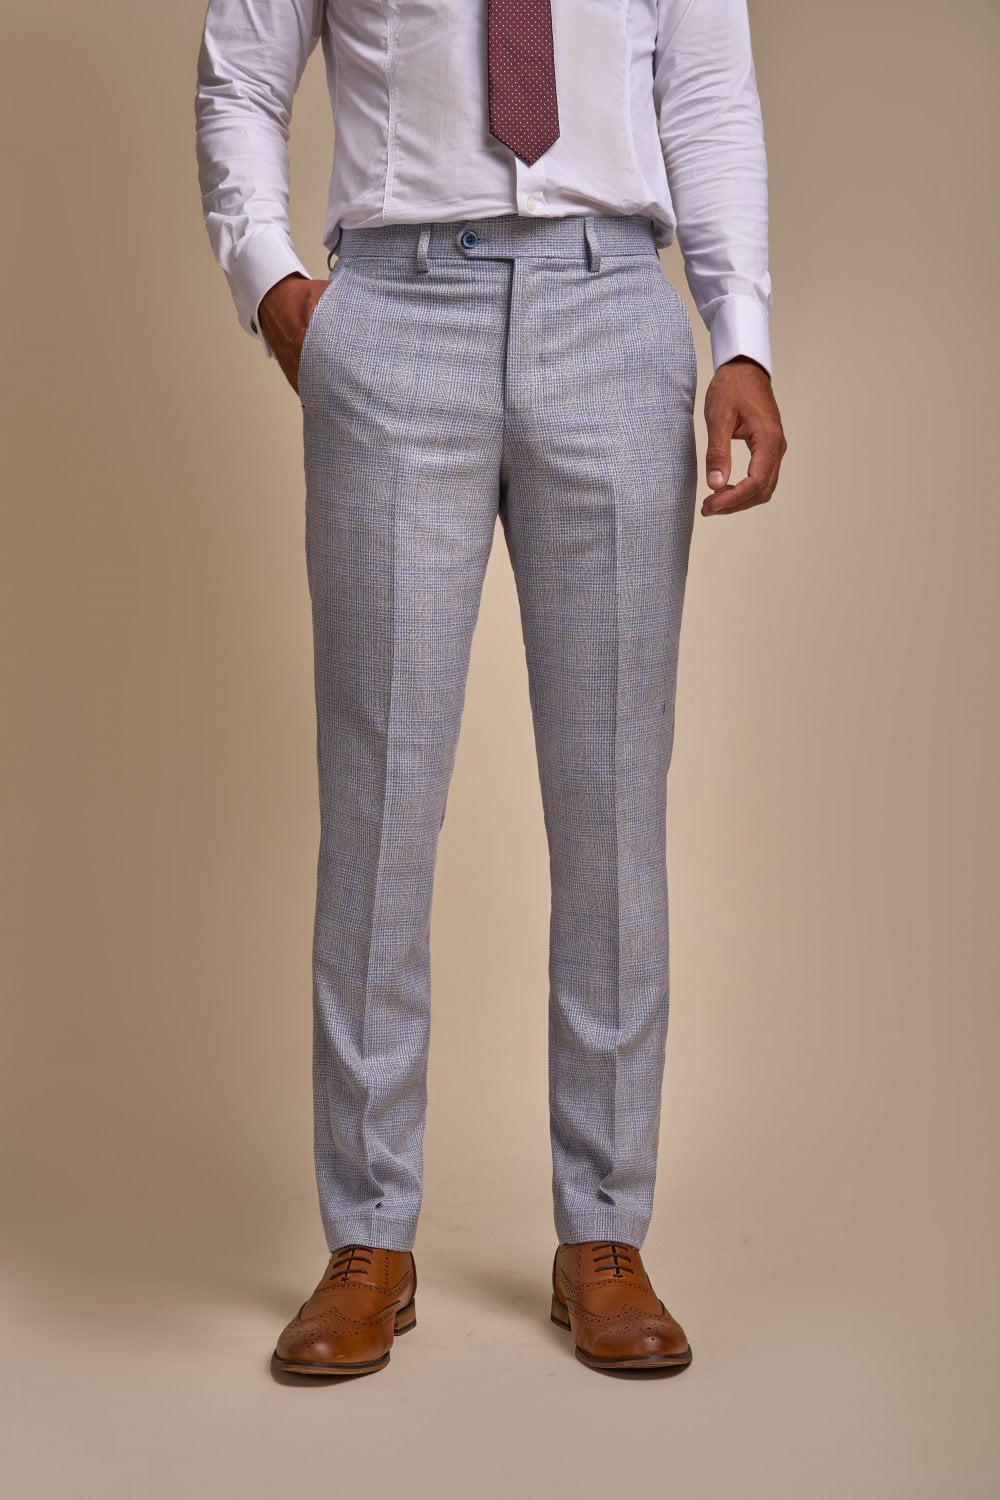 3-piece suit Cavani Caridi Sky blue Mix and Match